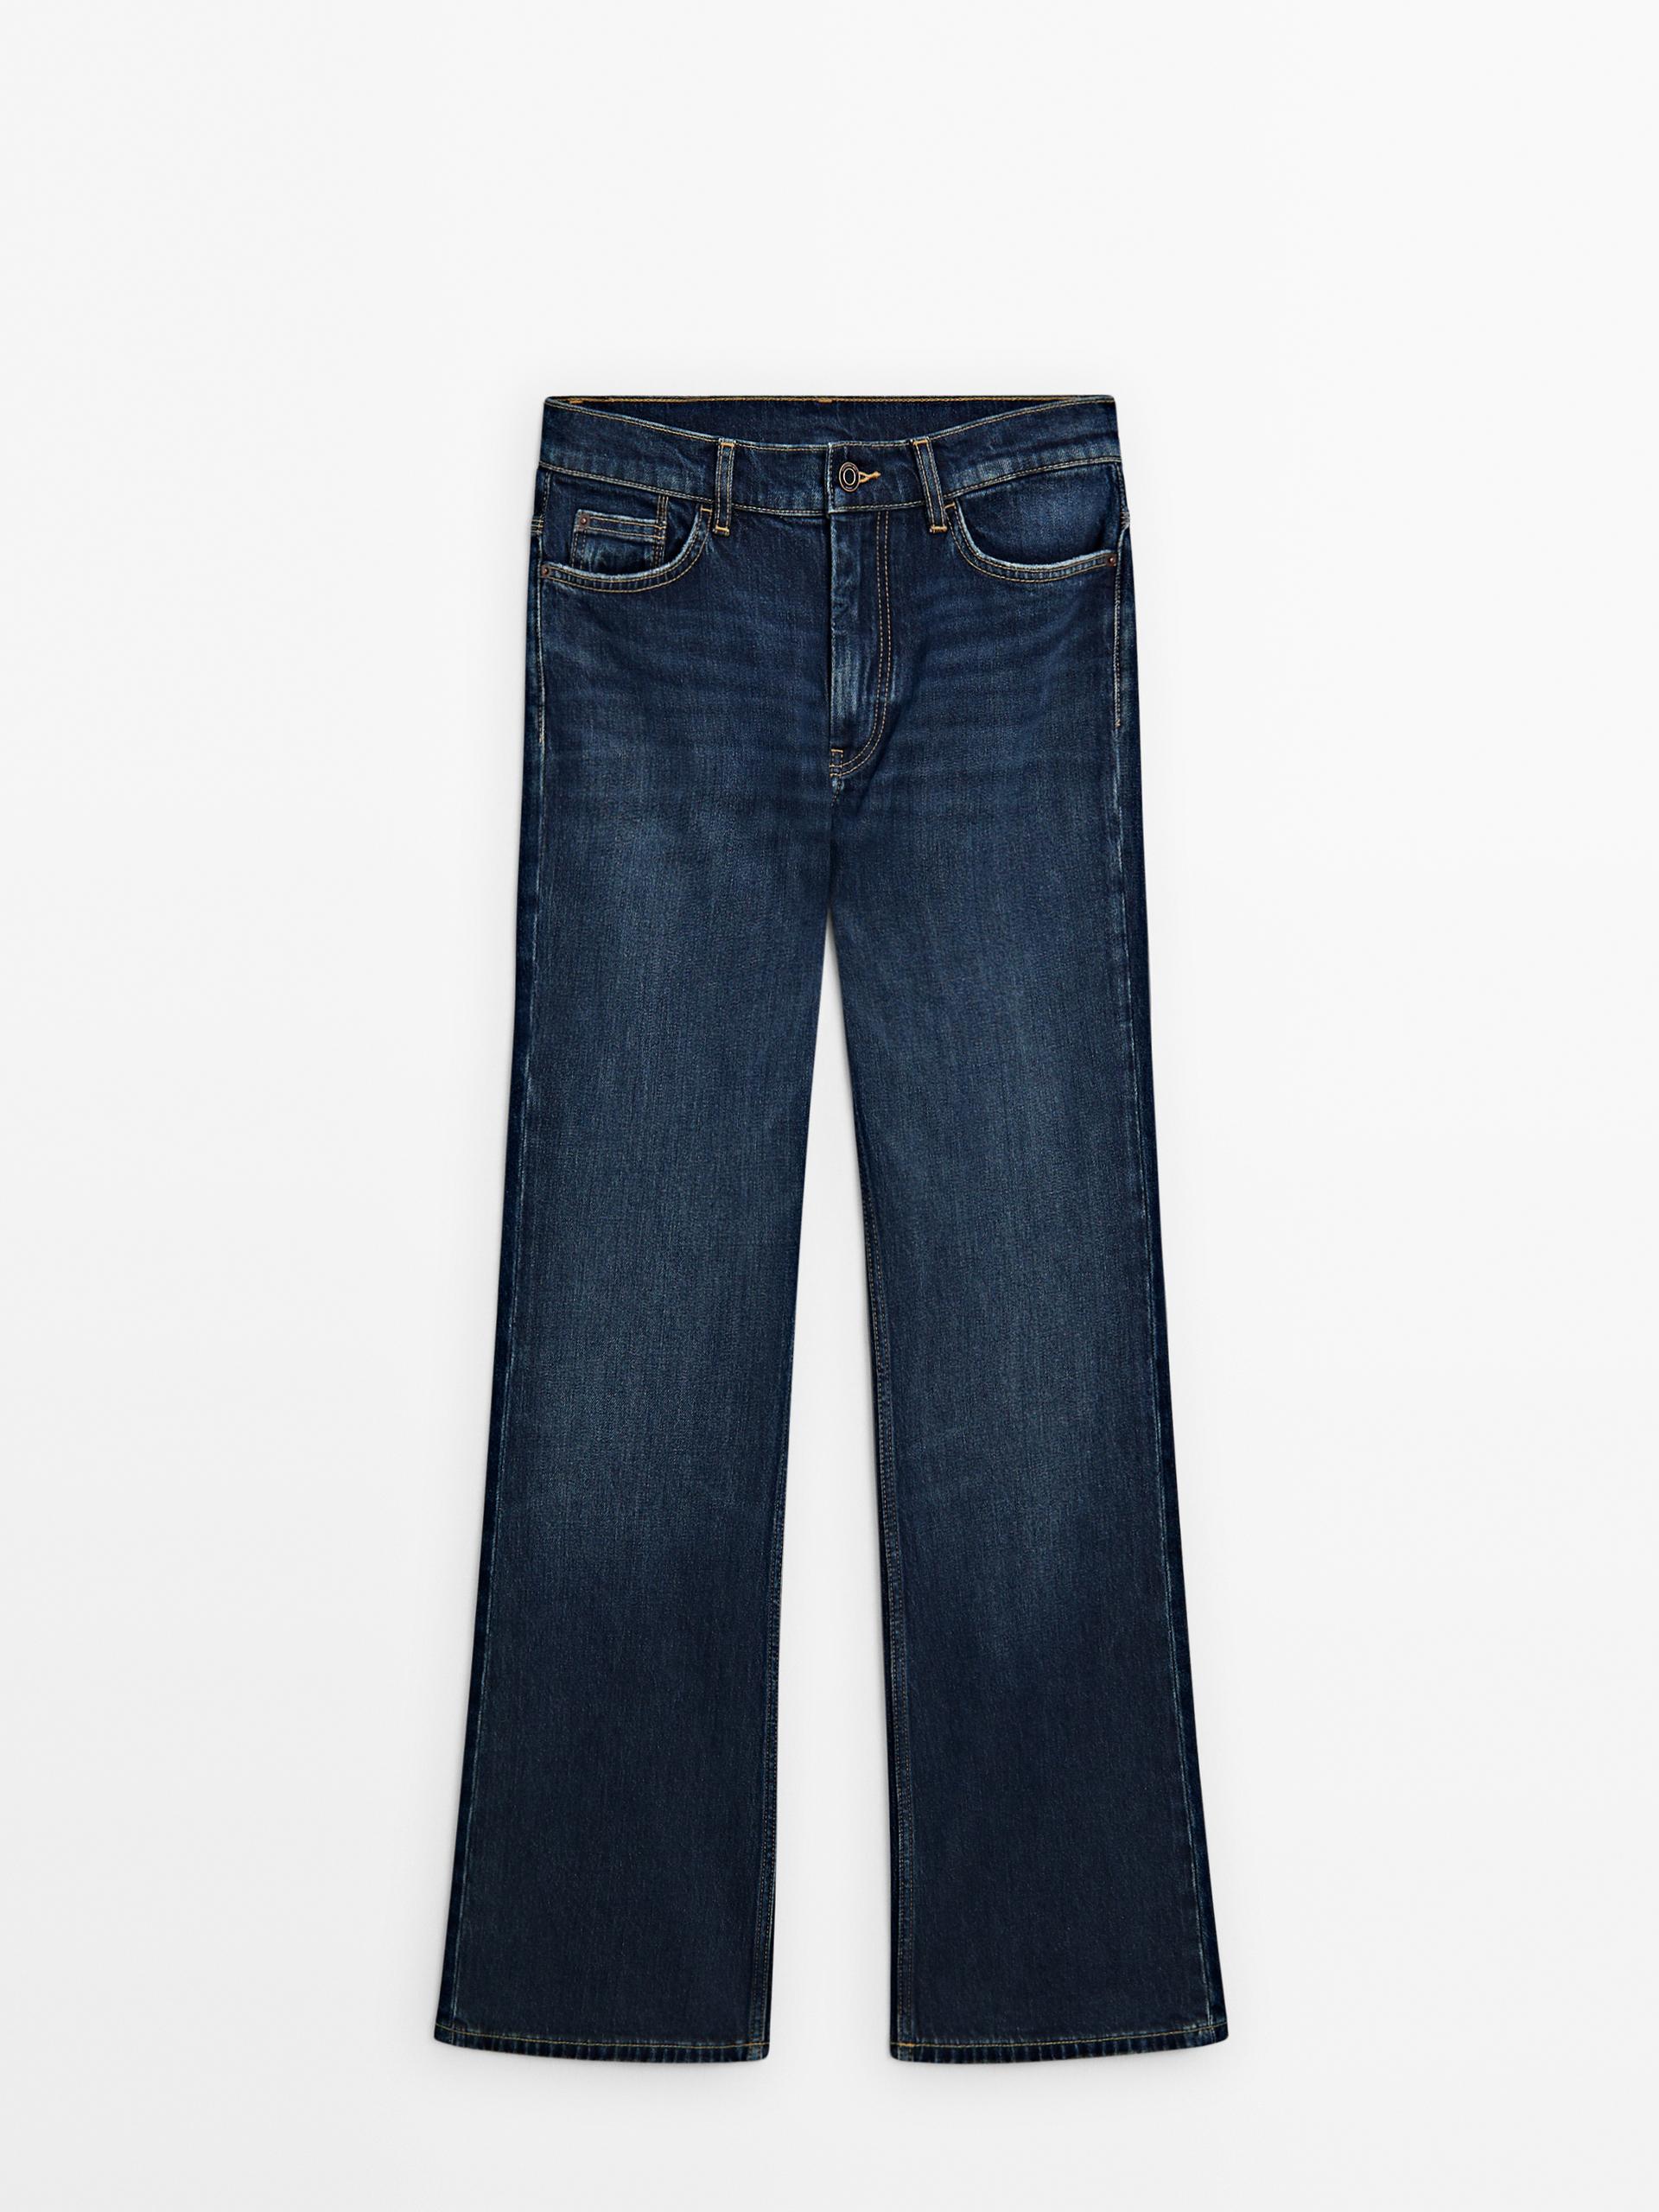 NWOT Zara High Waisted Bootcut Jeans Blue 4